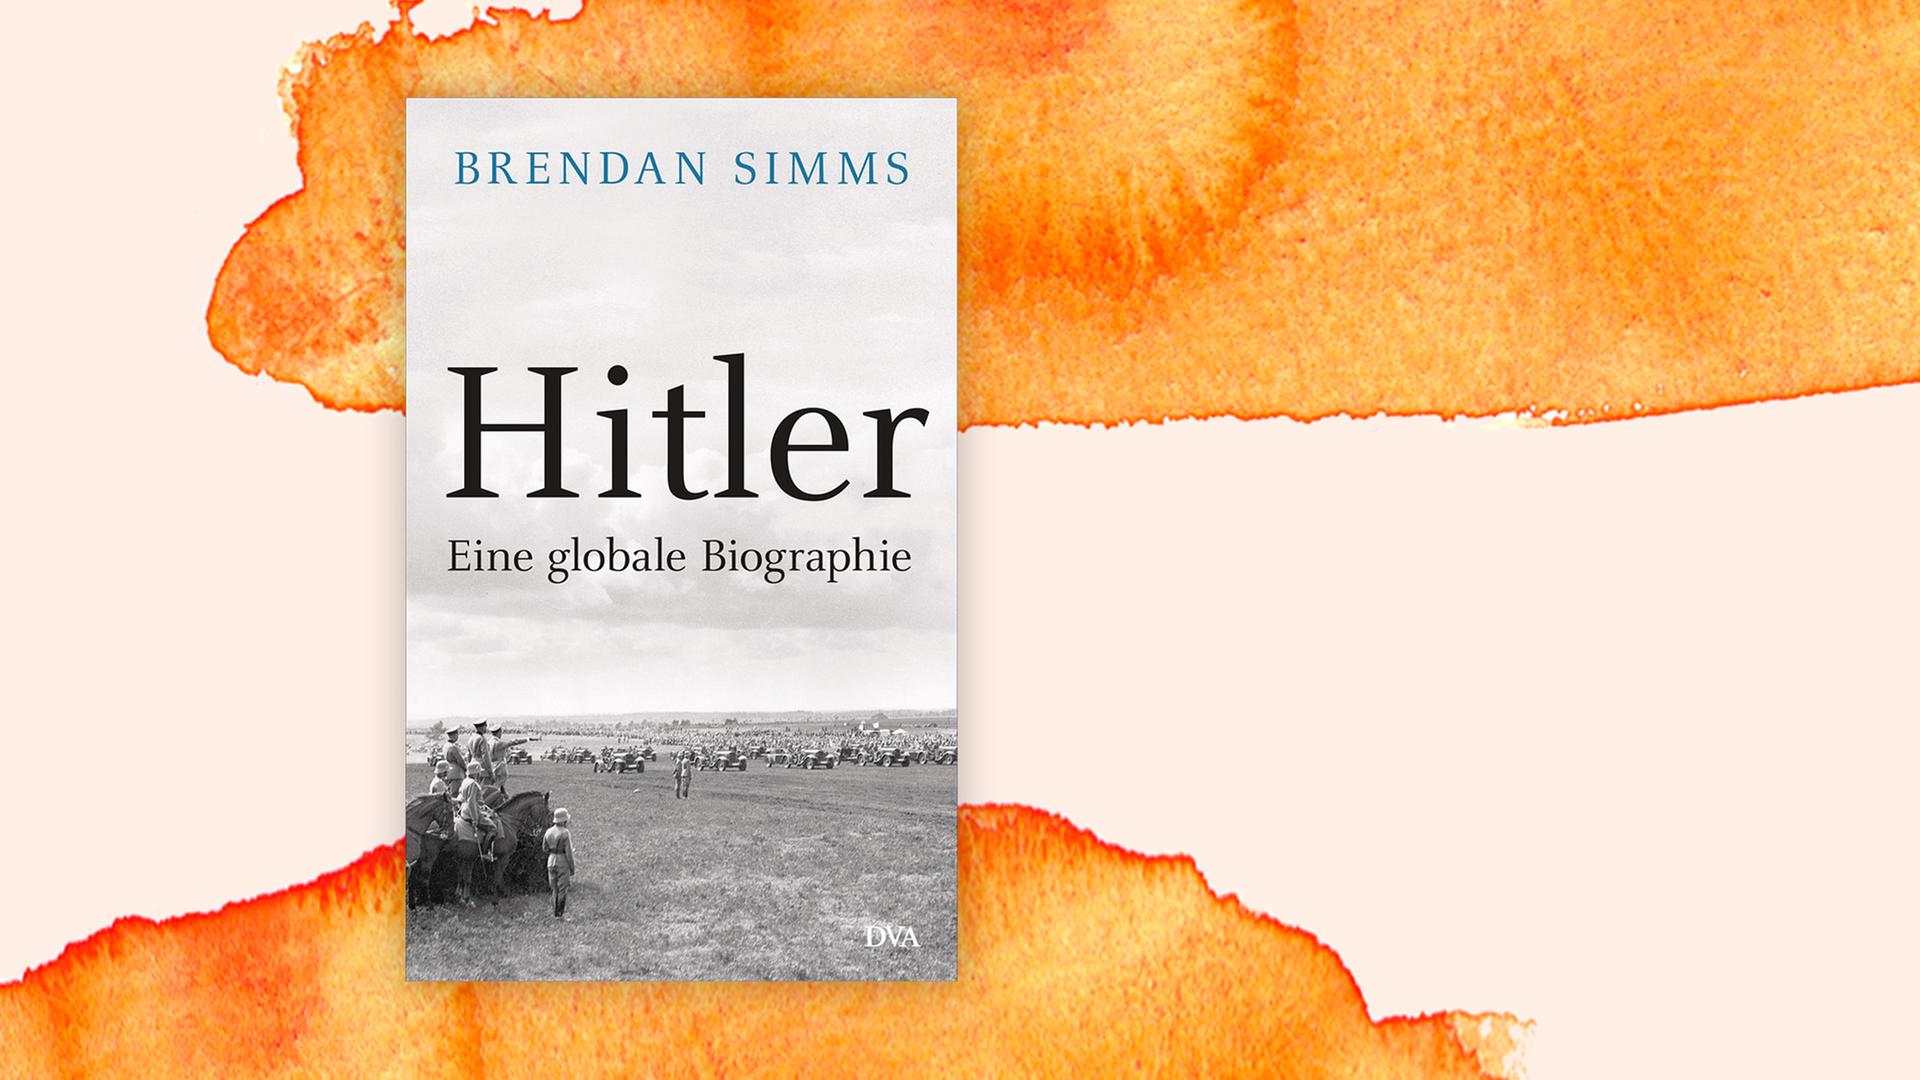 Buchcover: "Hitler: Eine globale Biographie" von Brendan Simms. Zu sehen ist ein historisches Militärfoto.